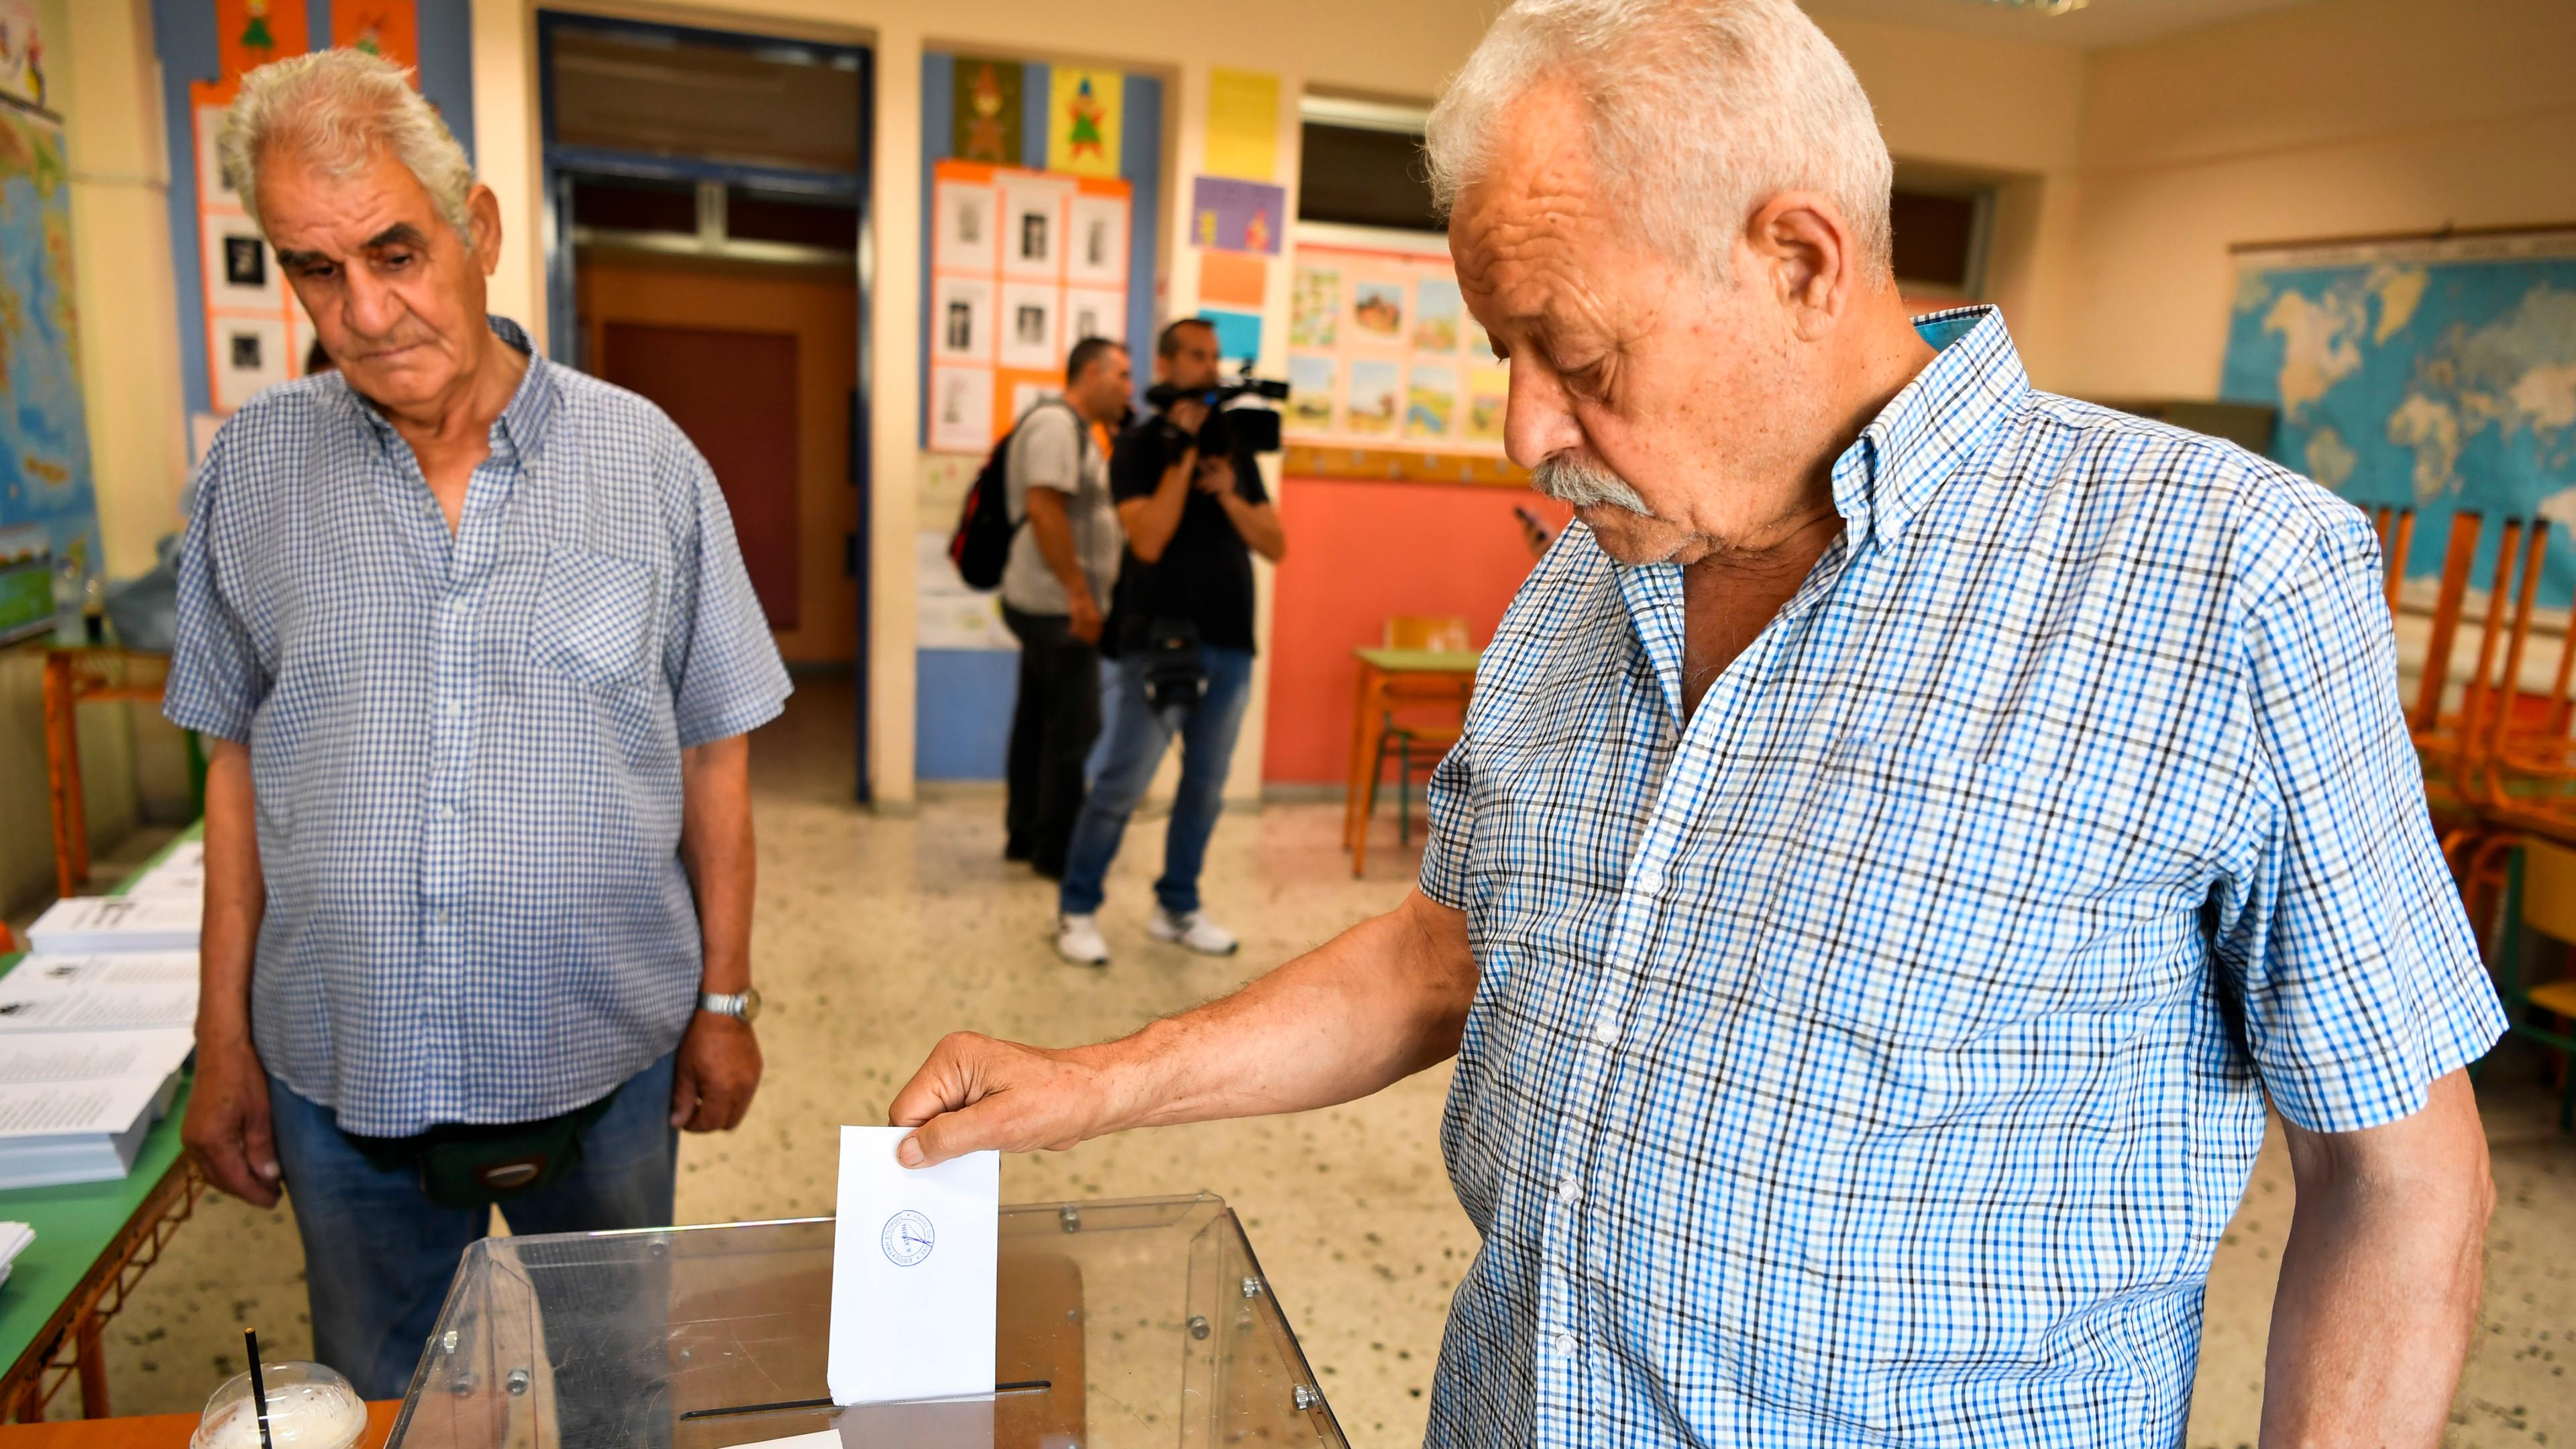 Parlamentswahlen in Griechenland. Ein Mann an der Wahlurne